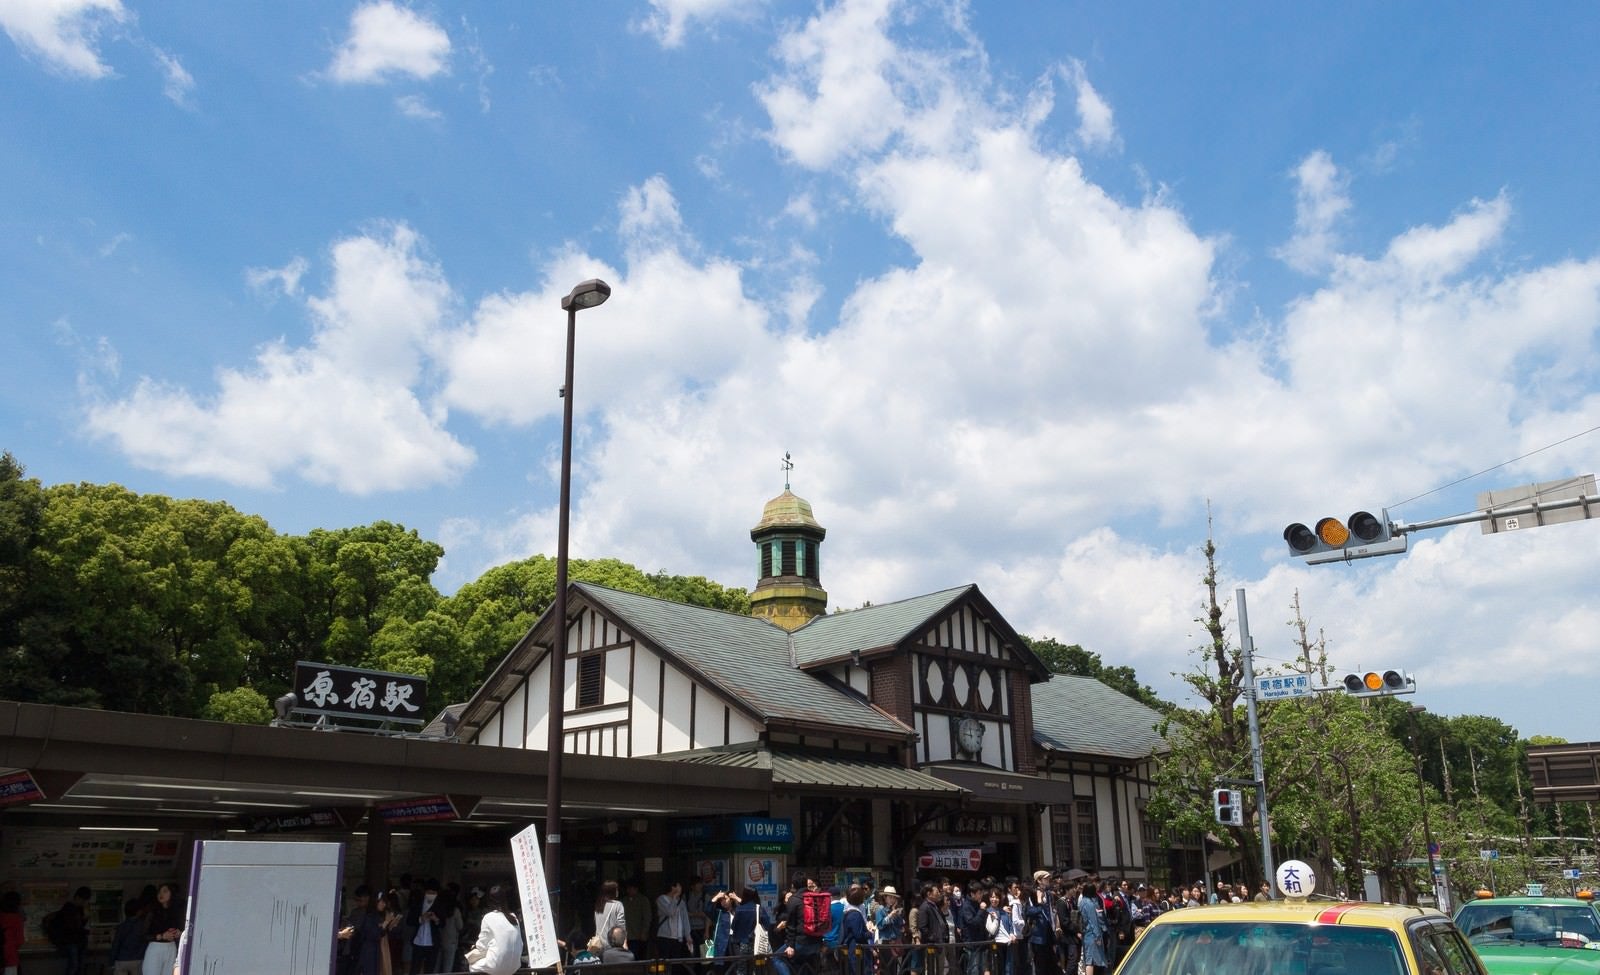 「原宿駅前の人混み」の写真